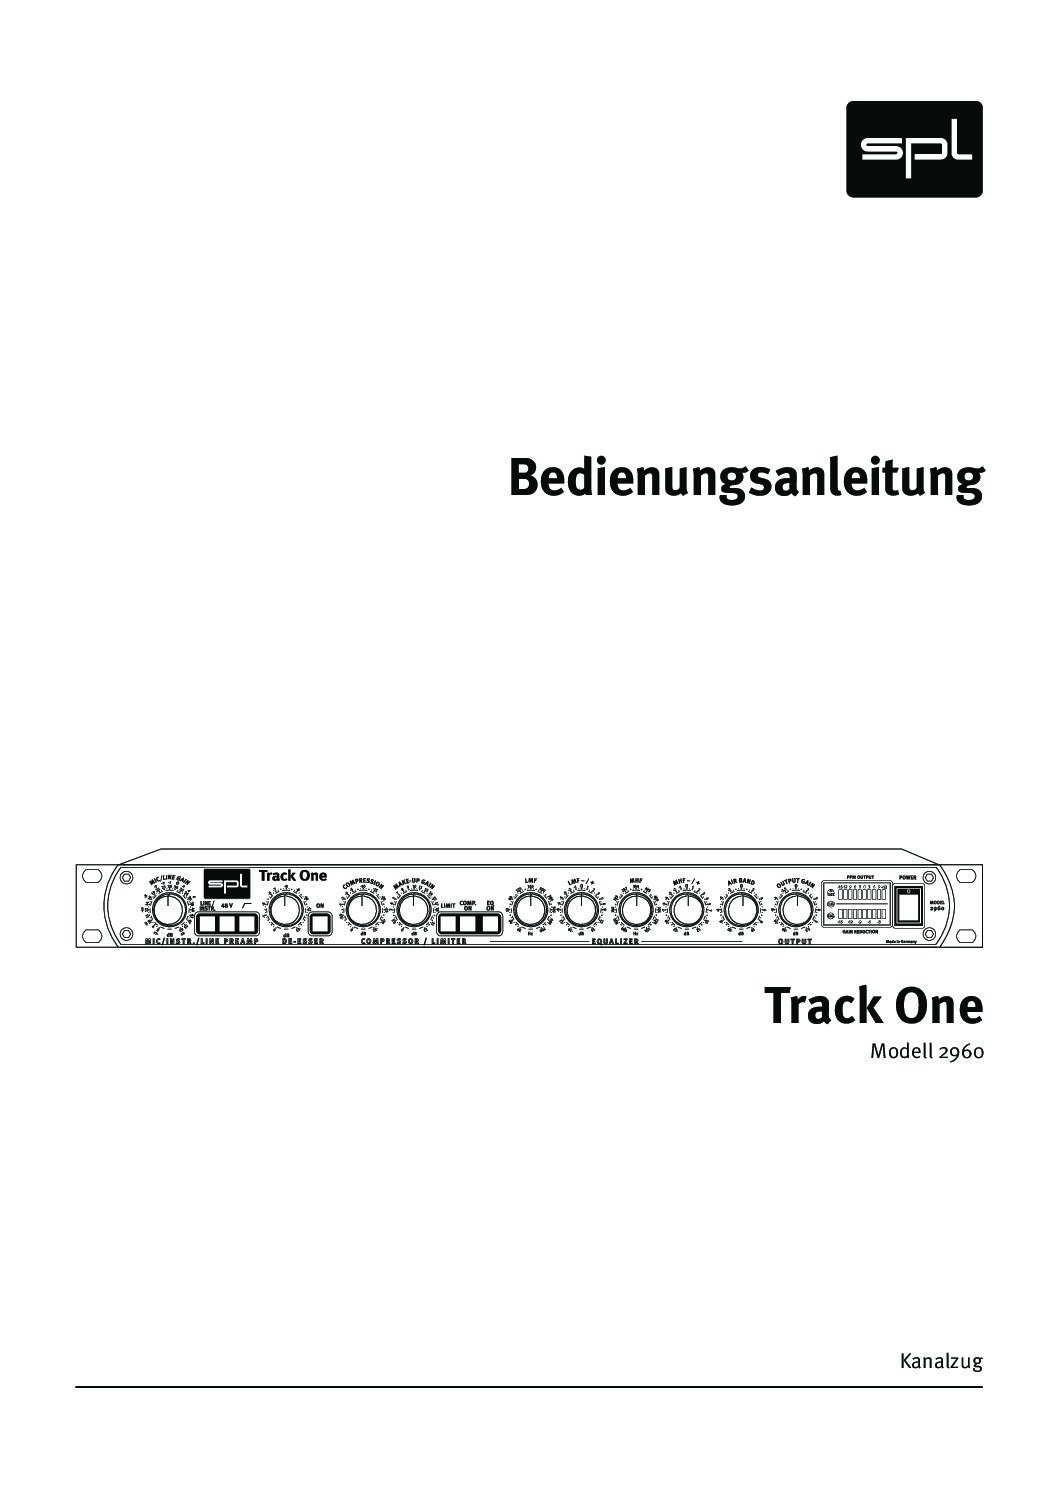 Spl track